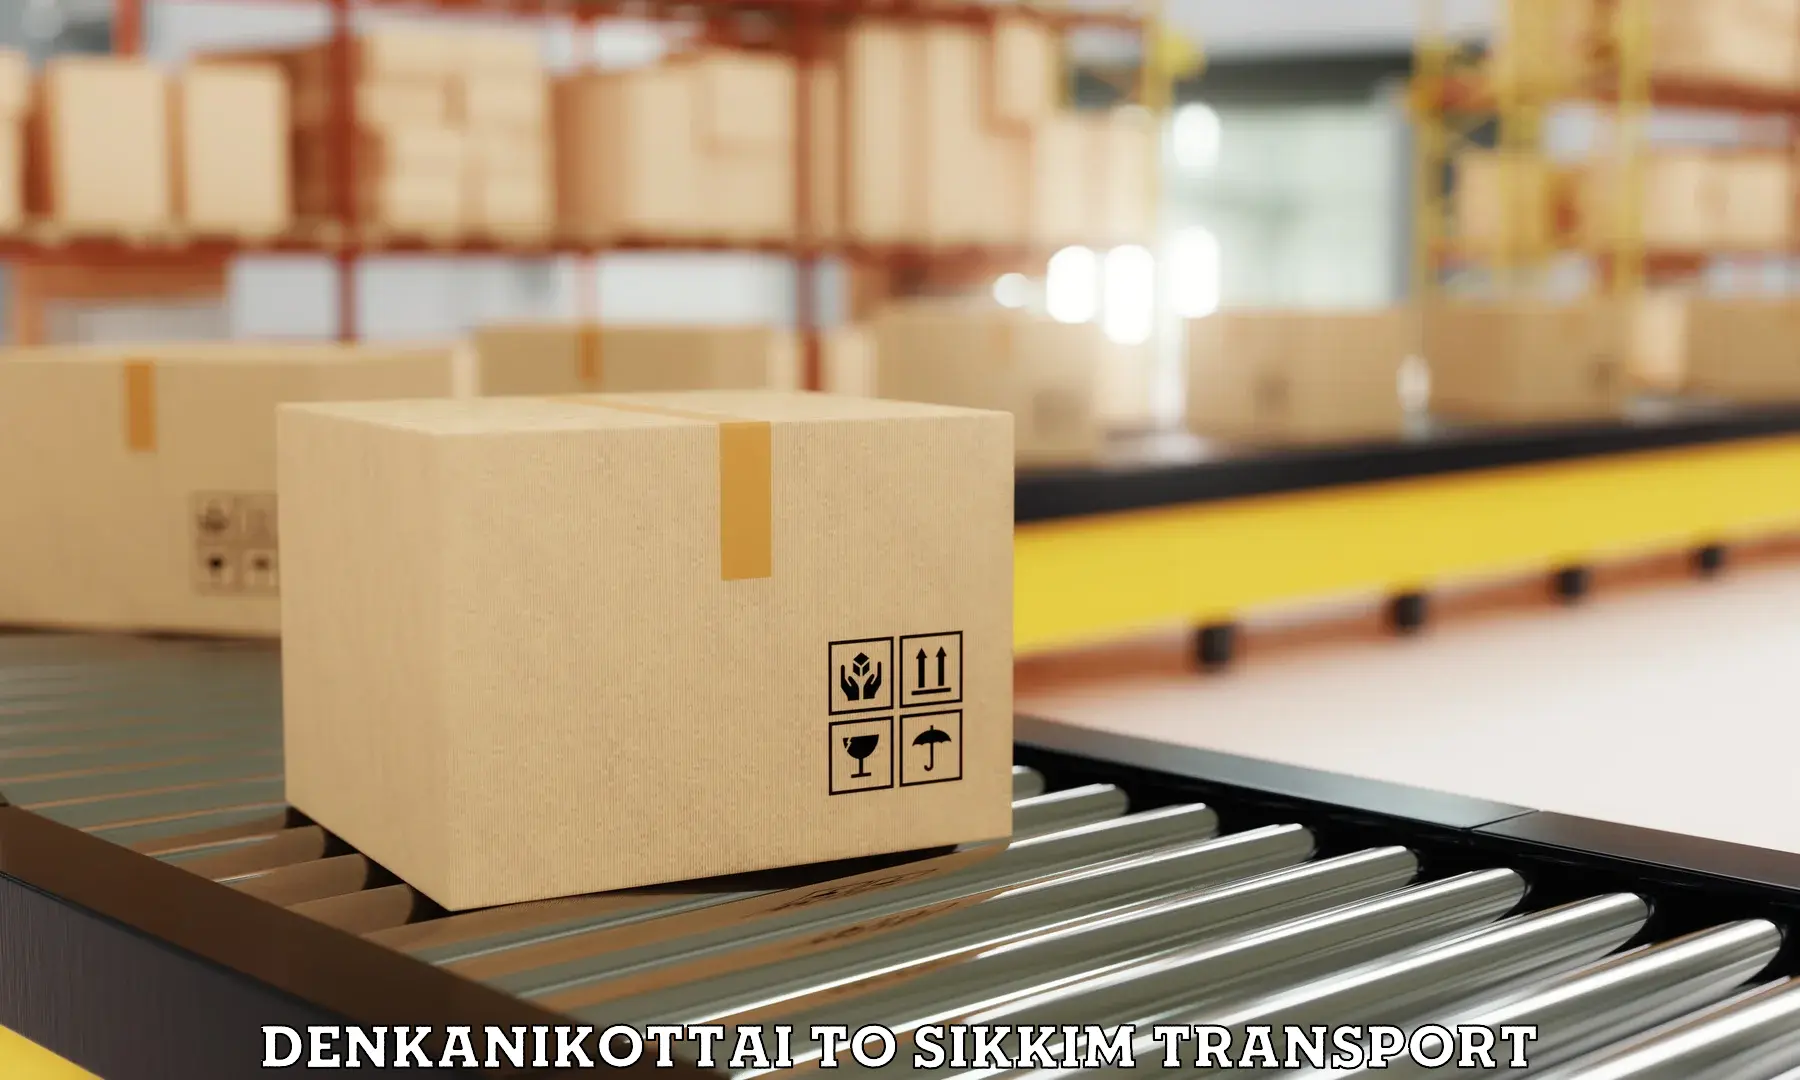 Pick up transport service Denkanikottai to Mangan